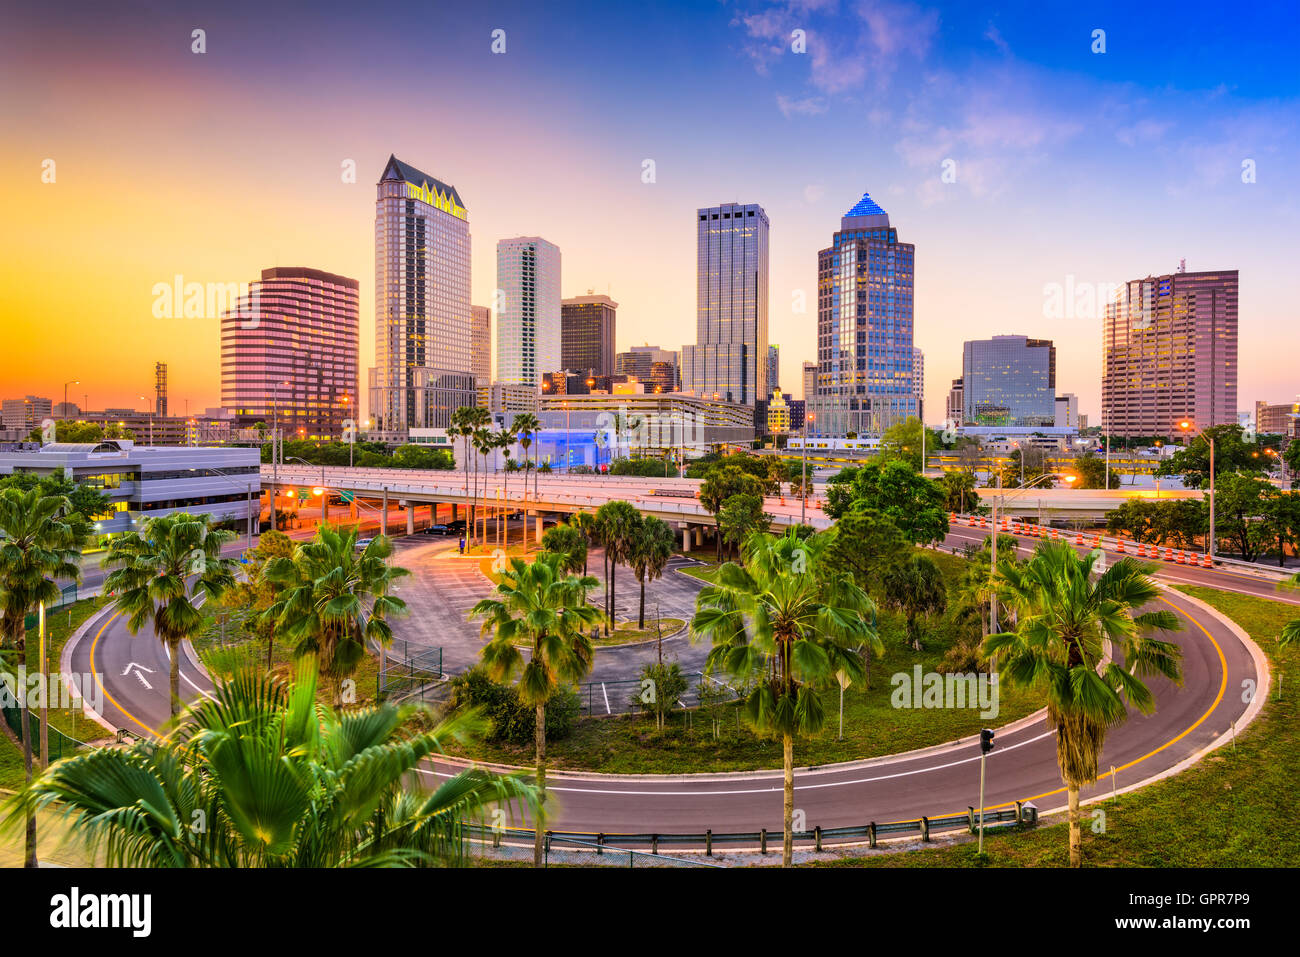 Tampa, Florida, USA downtown skyline. Stock Photo